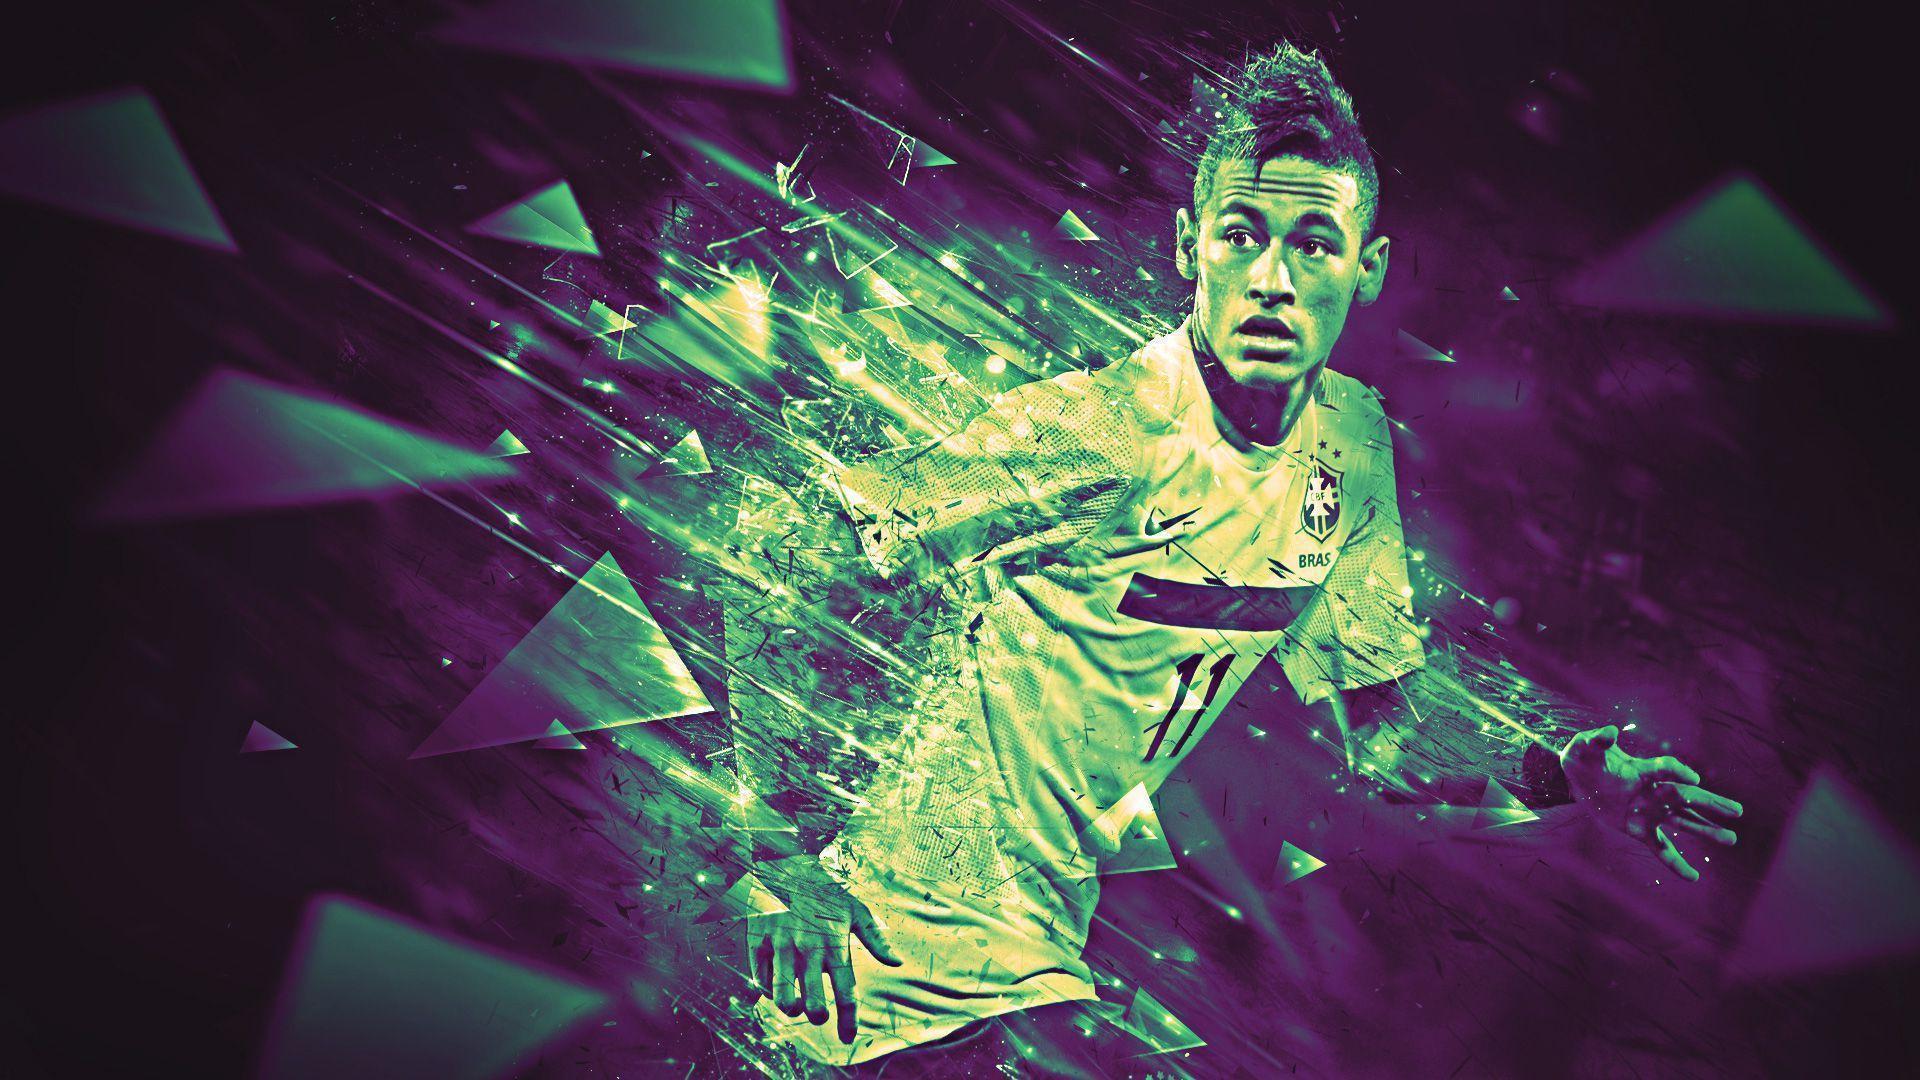 Best HD Neymar Wallpaper 2014